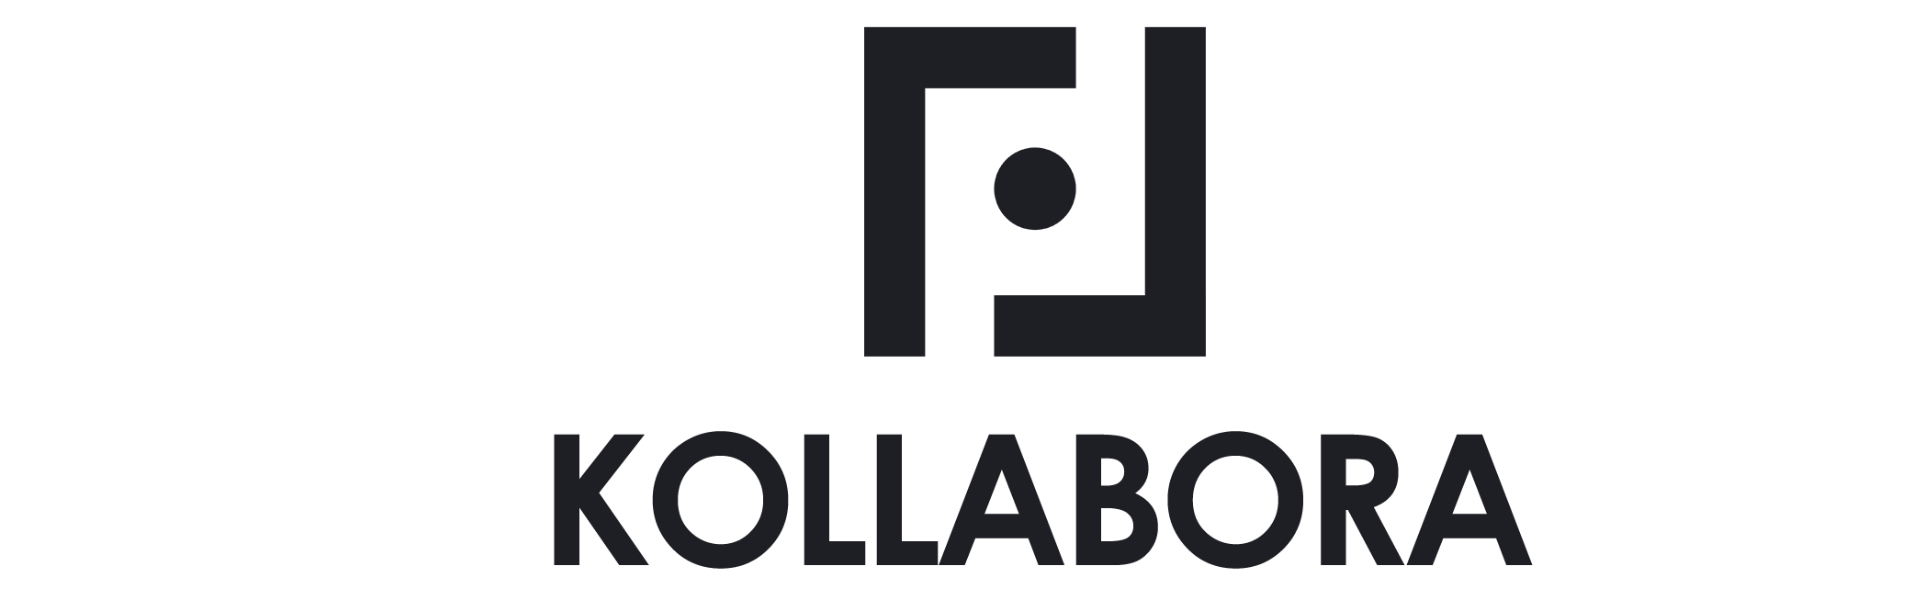 logo kollabora